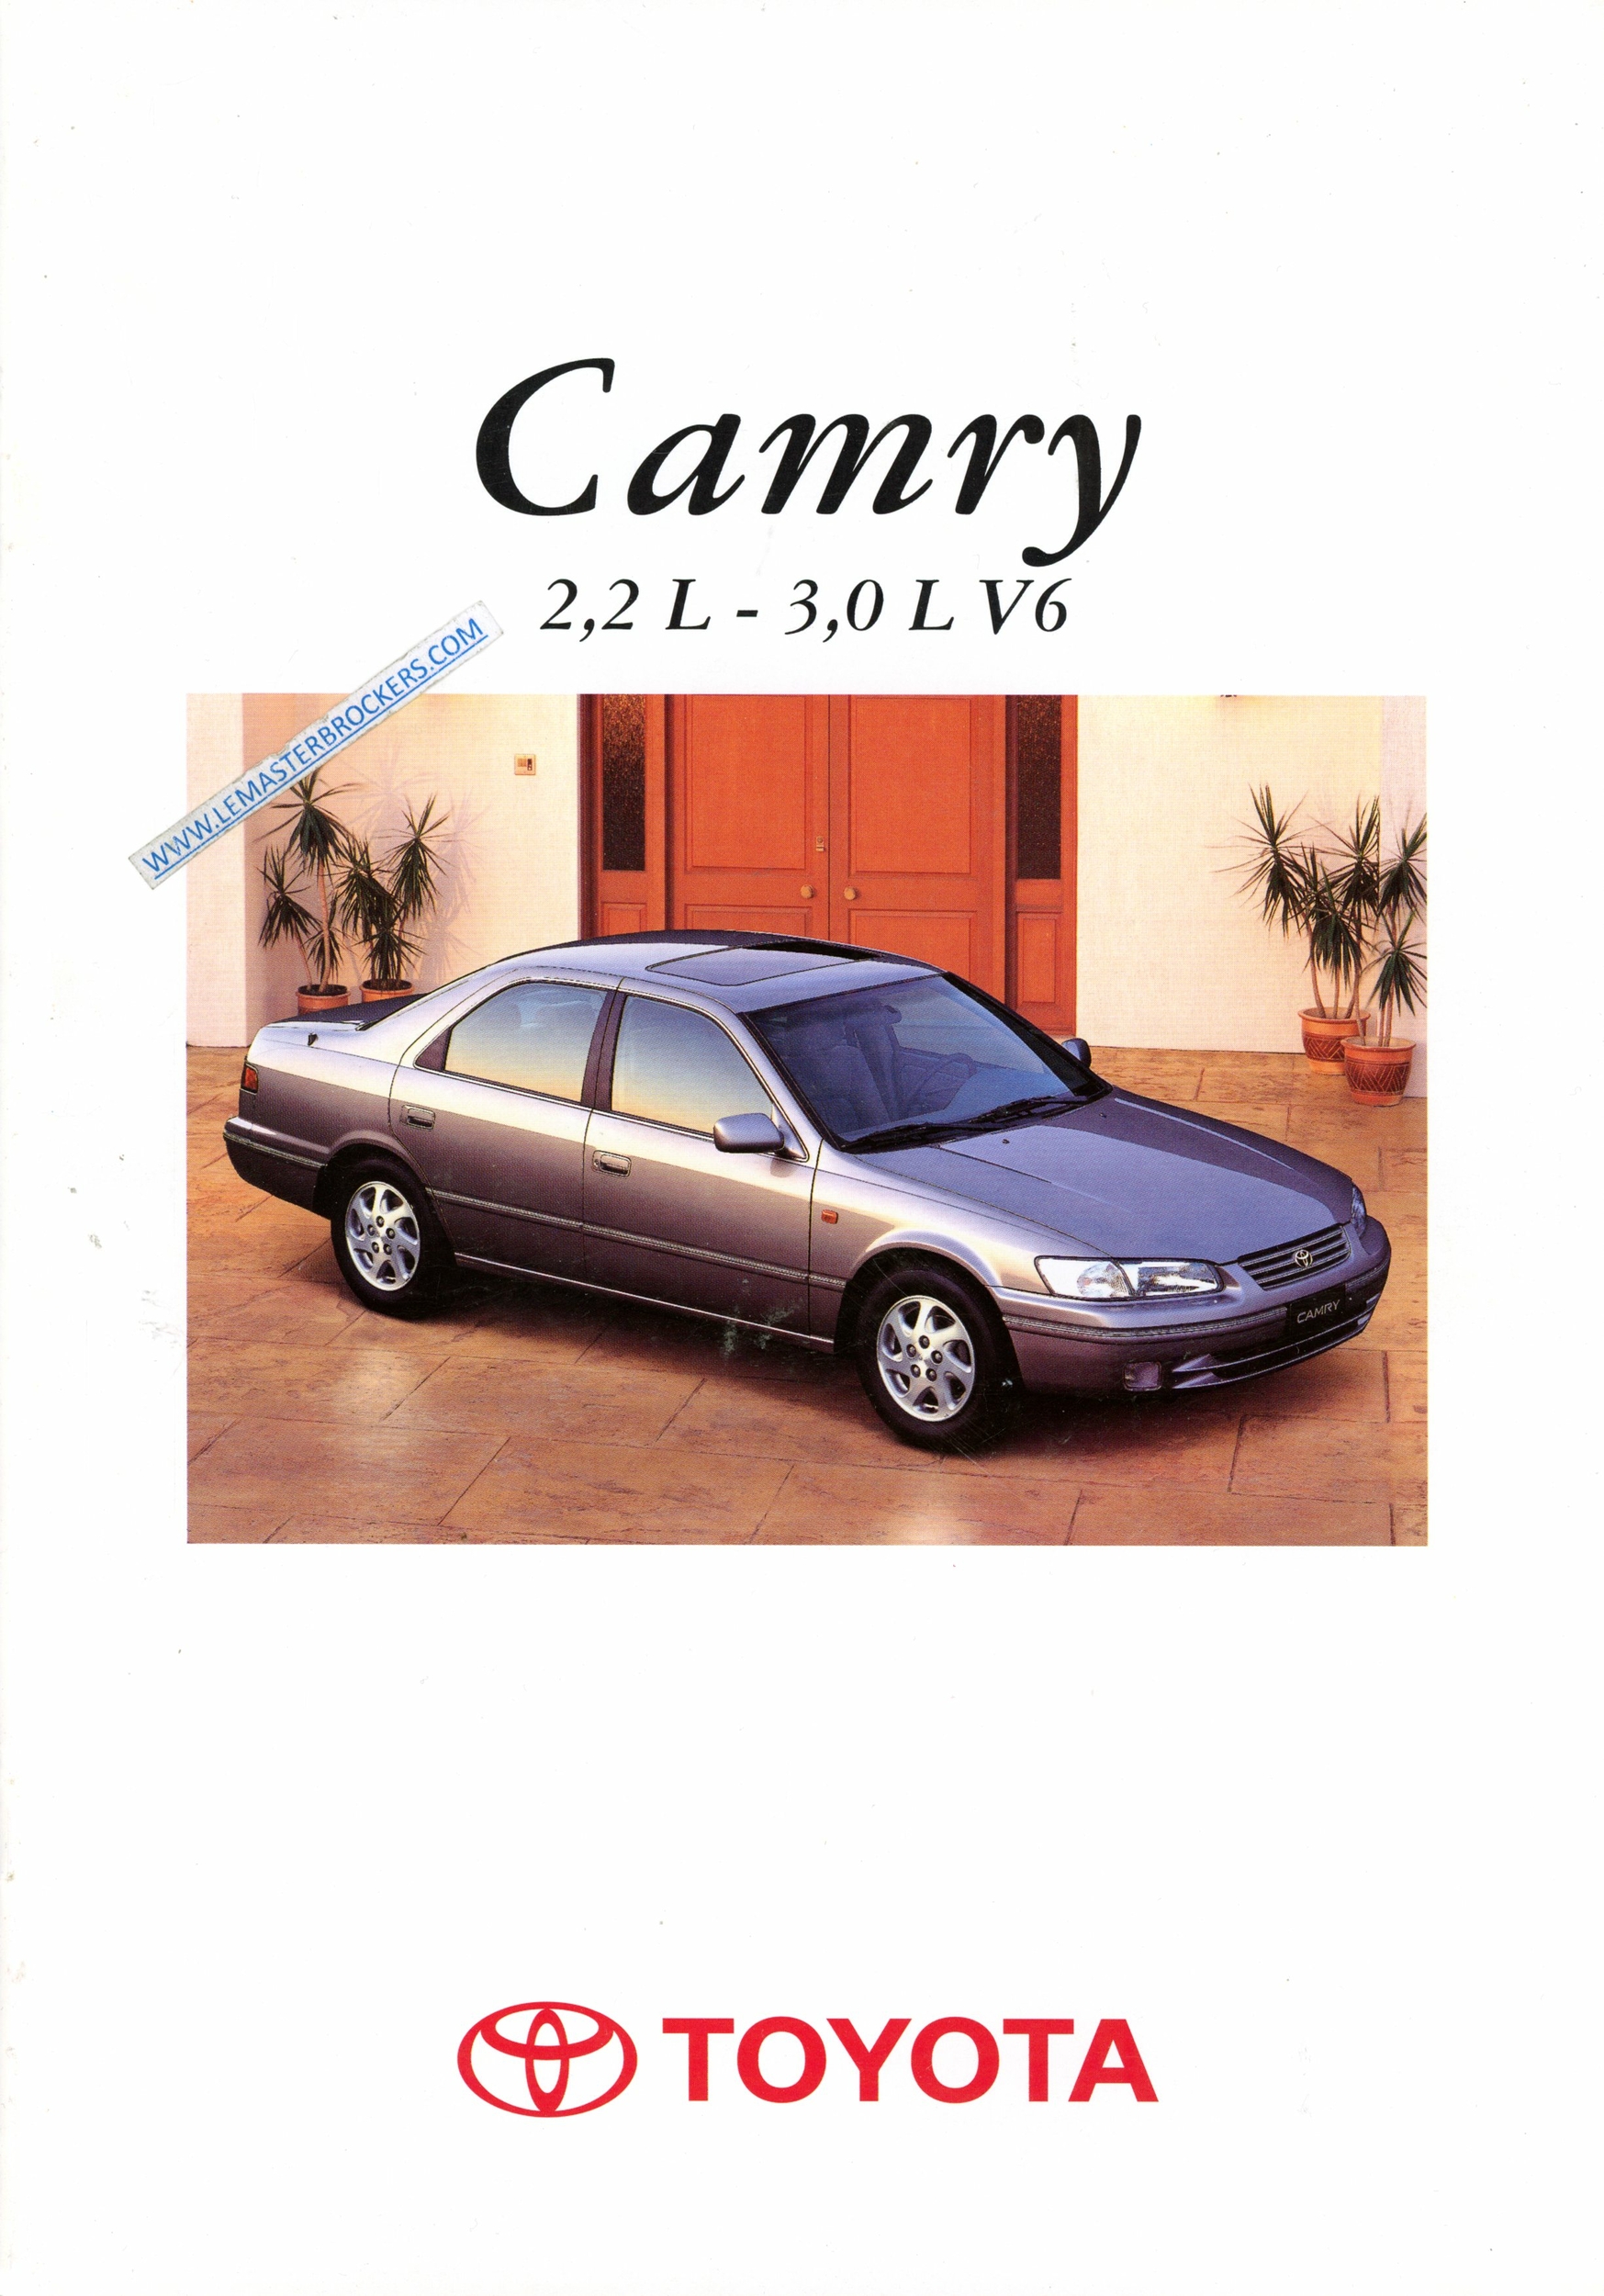 TOYOTA CAMRY 2.2 3.0 V6 CATALOGUE AUTOMOBILE 1996